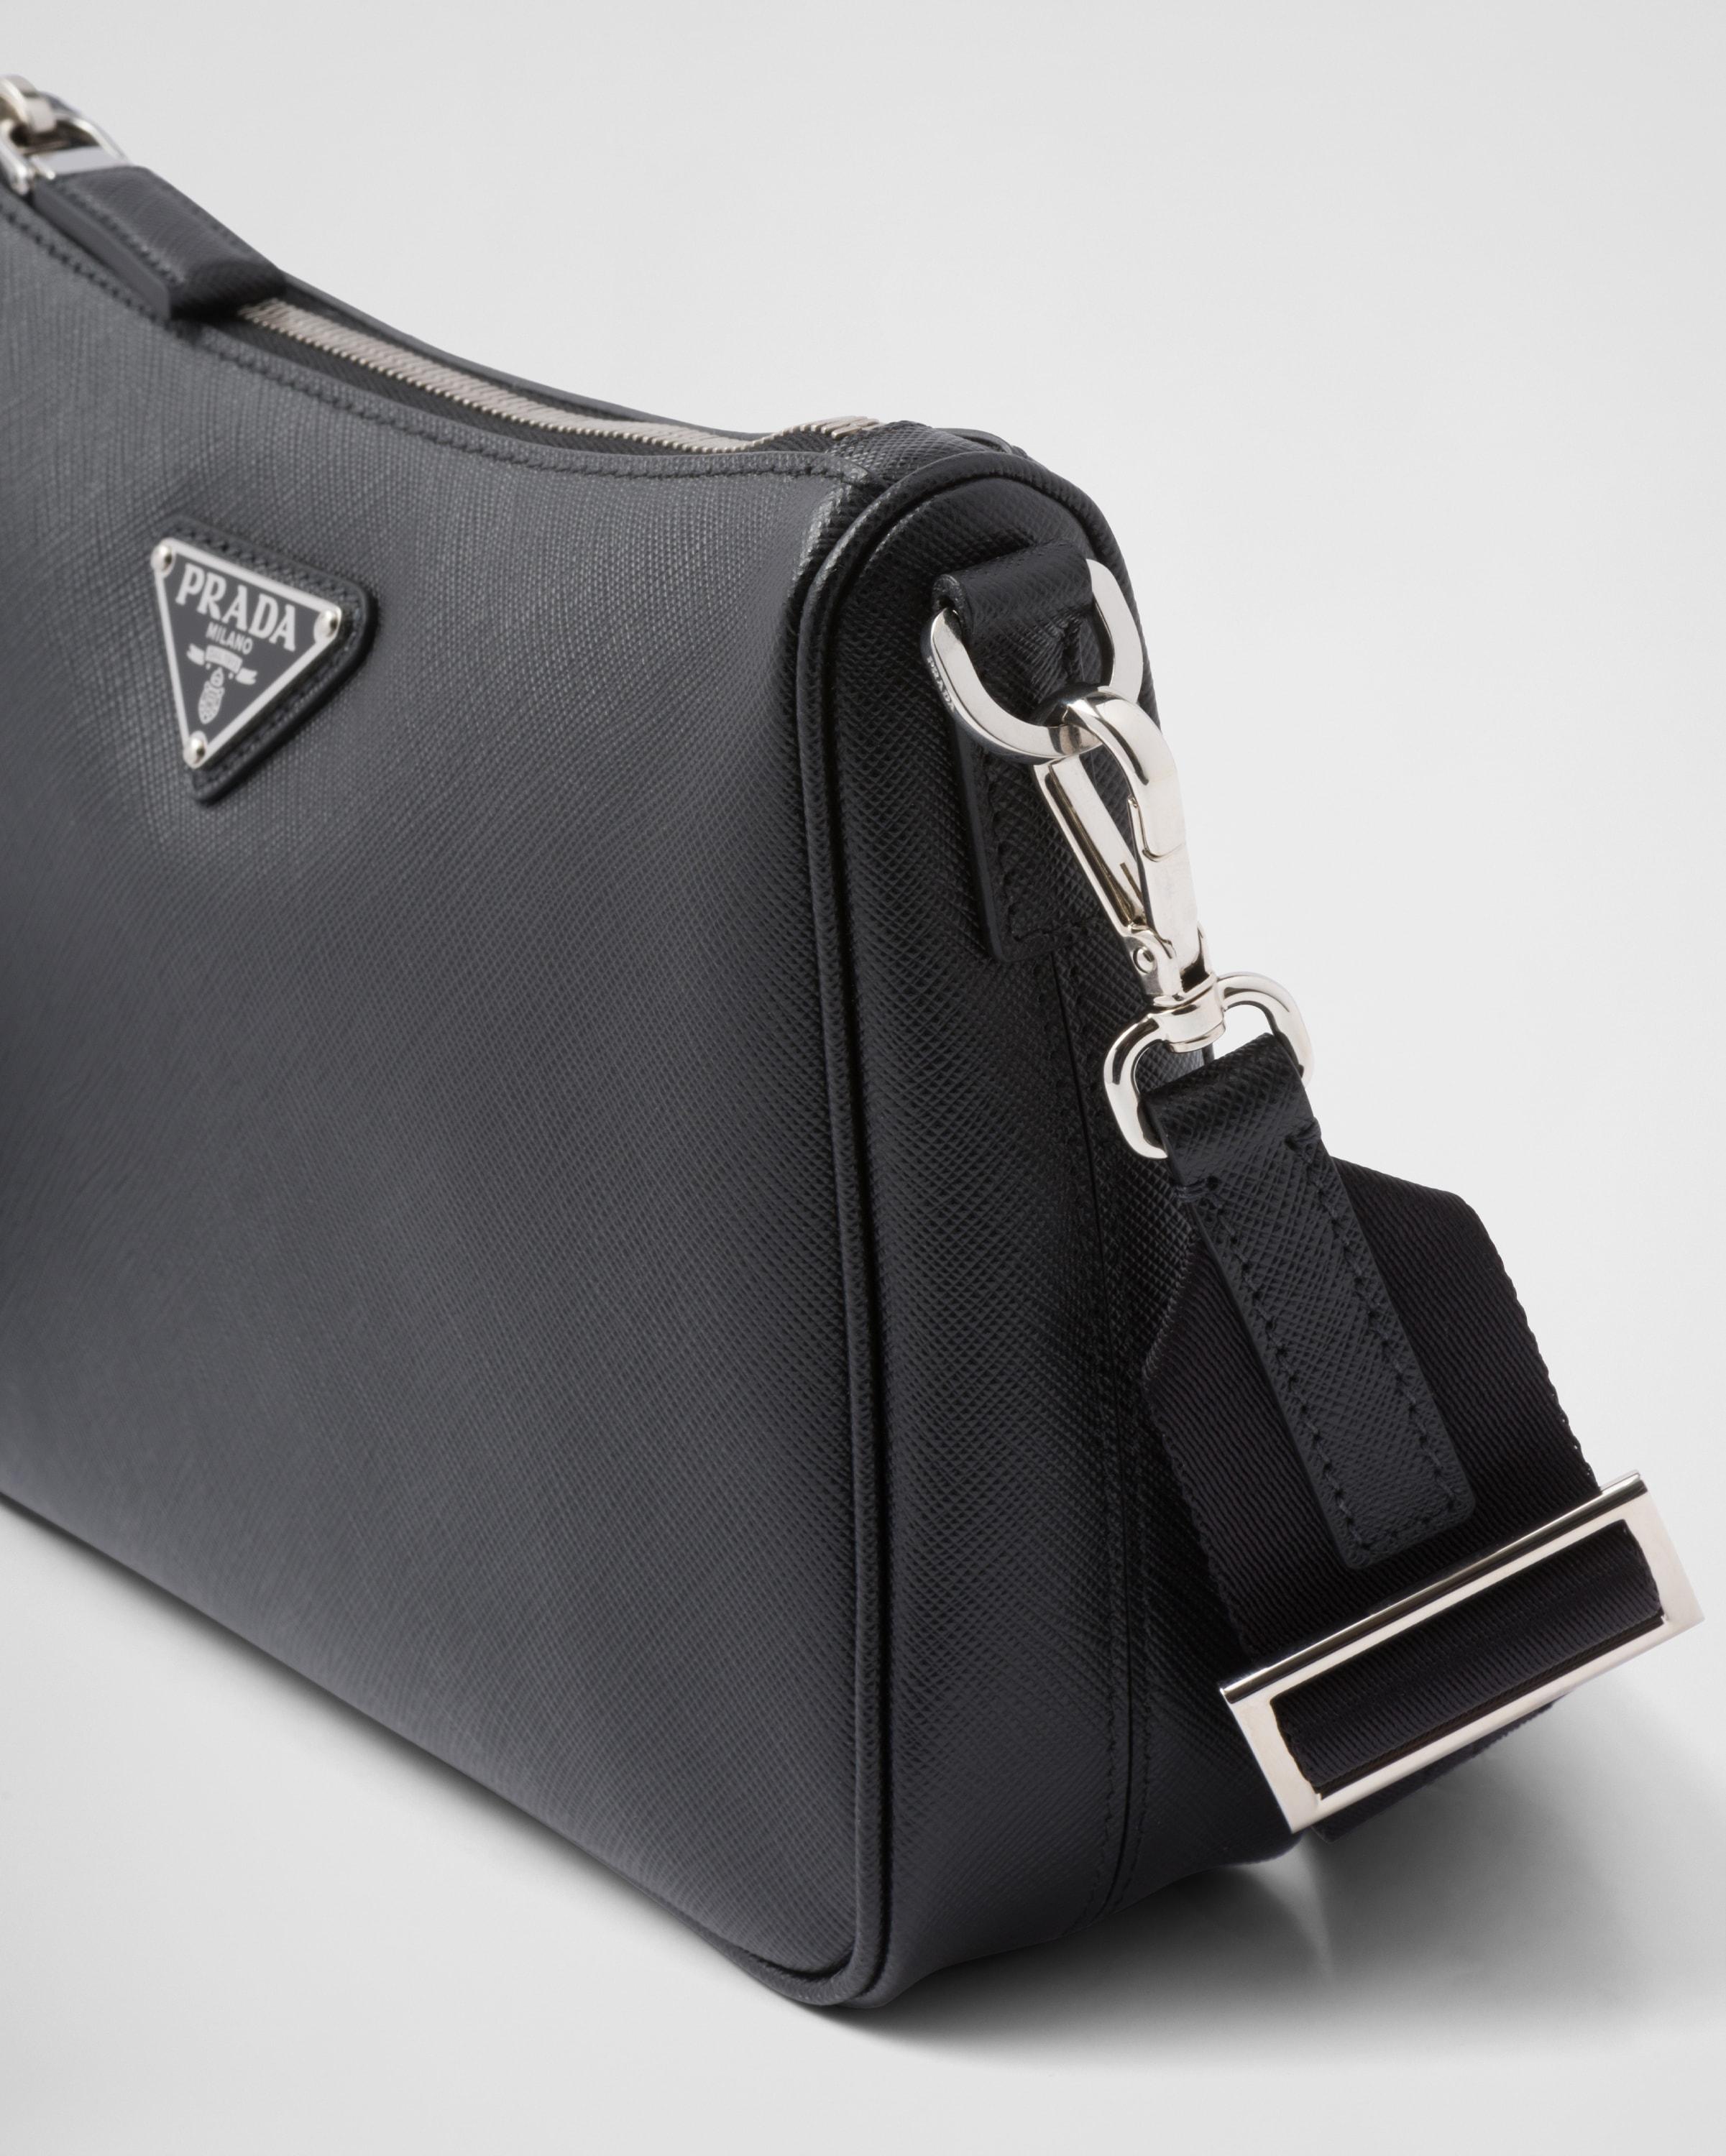 prada saffiano leather shoulder bag black